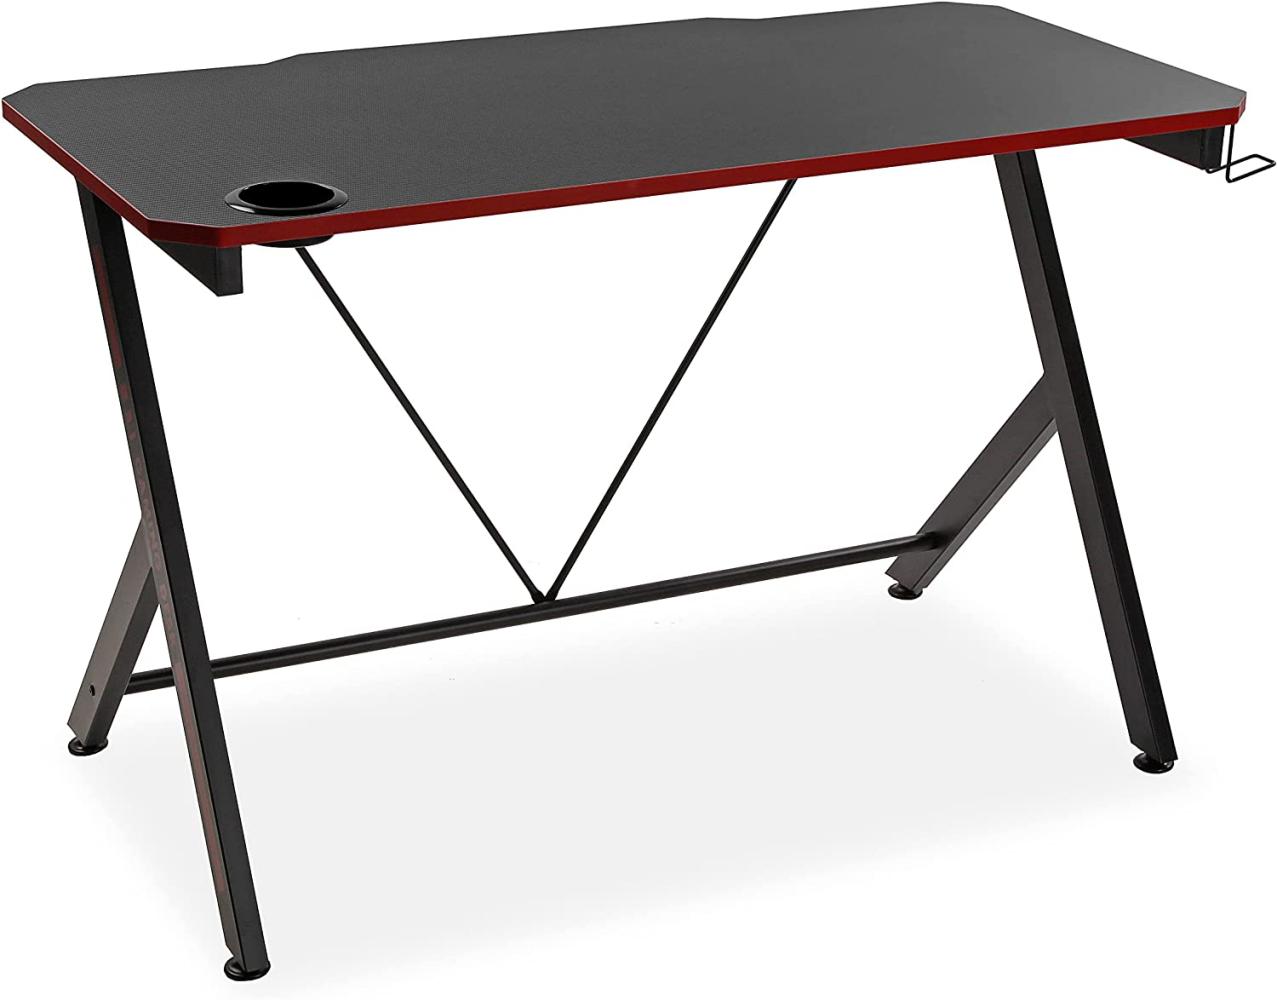 Versa Pablo Computer Spieltisch, Tisch für das Schlafzimmer oder Arbeitszimmer, Gaming tisch, Helm- und Getränkehalter, Maßnahmen (H x L x B) 76 x 60 x 120 cm, Holz und Metall, Farbe: Schwarz und rot Bild 1